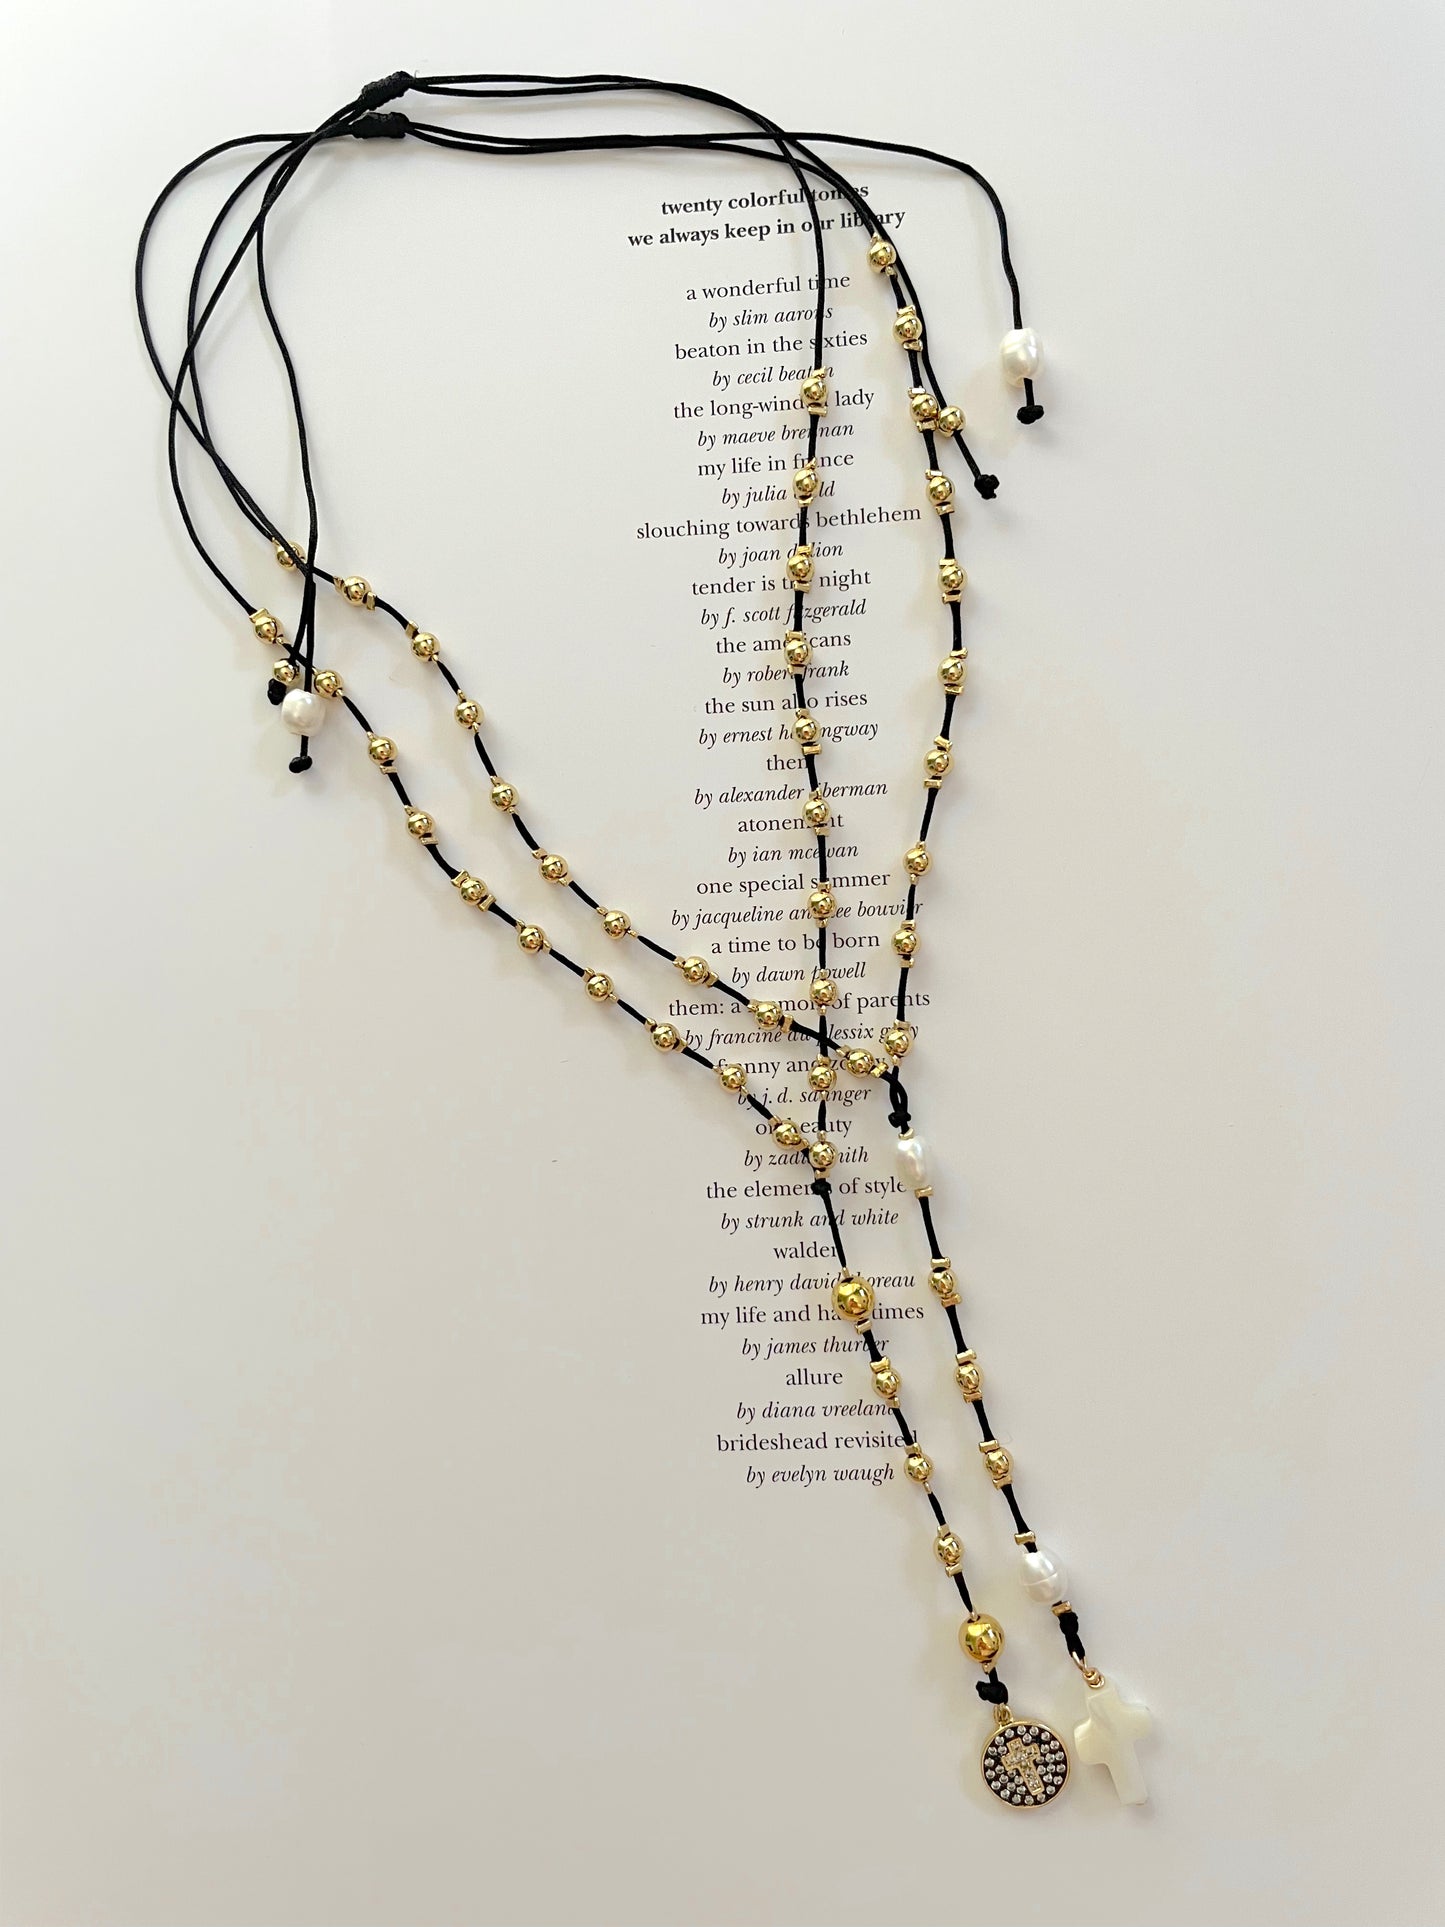 Gold beaded rosary